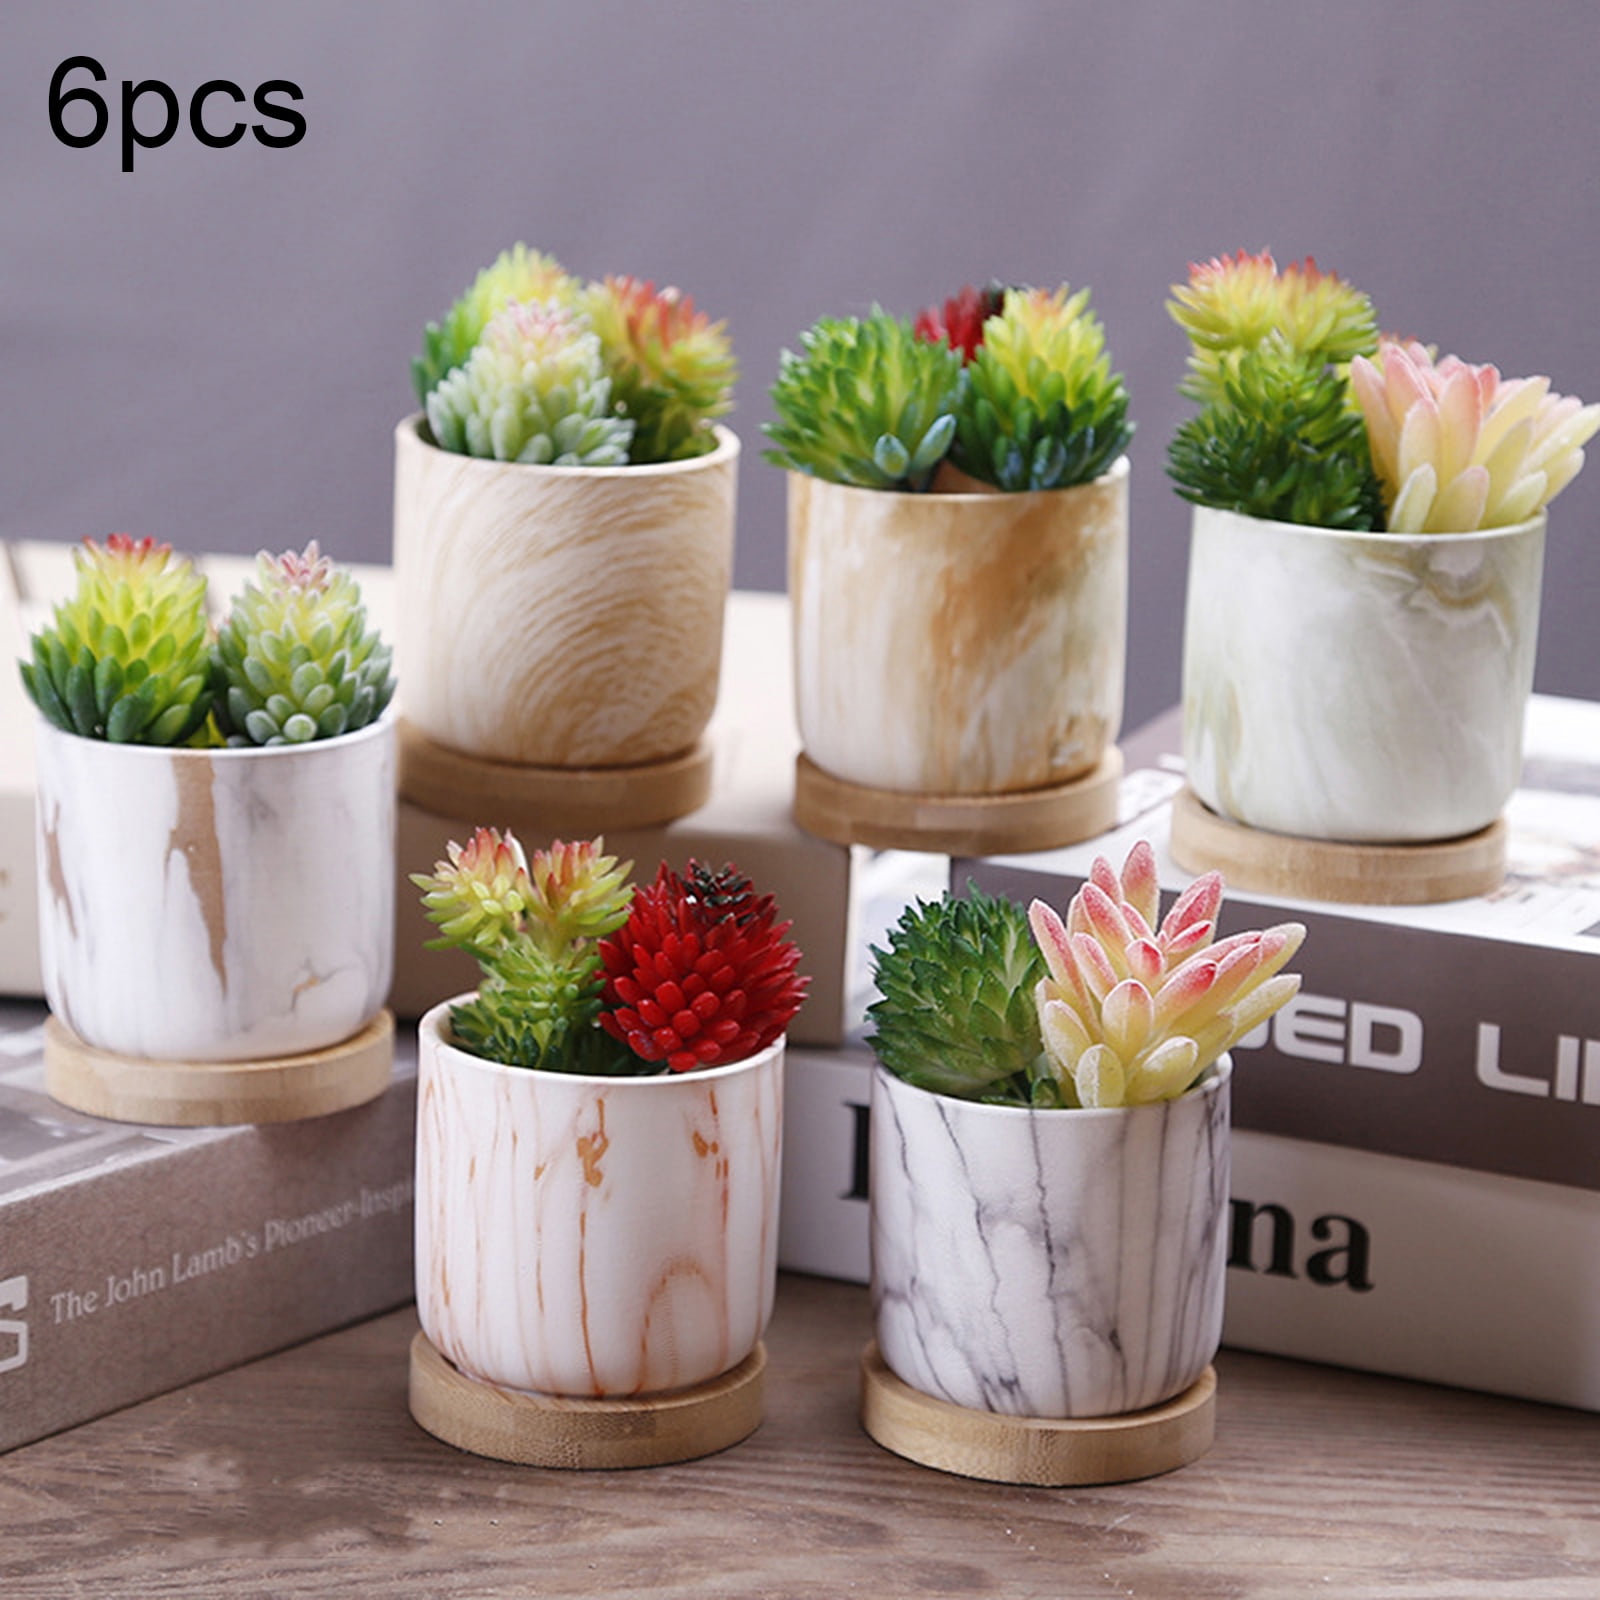 6Pcs Ceramic Plant Pot Marble Succulent Flower Planter Bonsai Box Garden Home